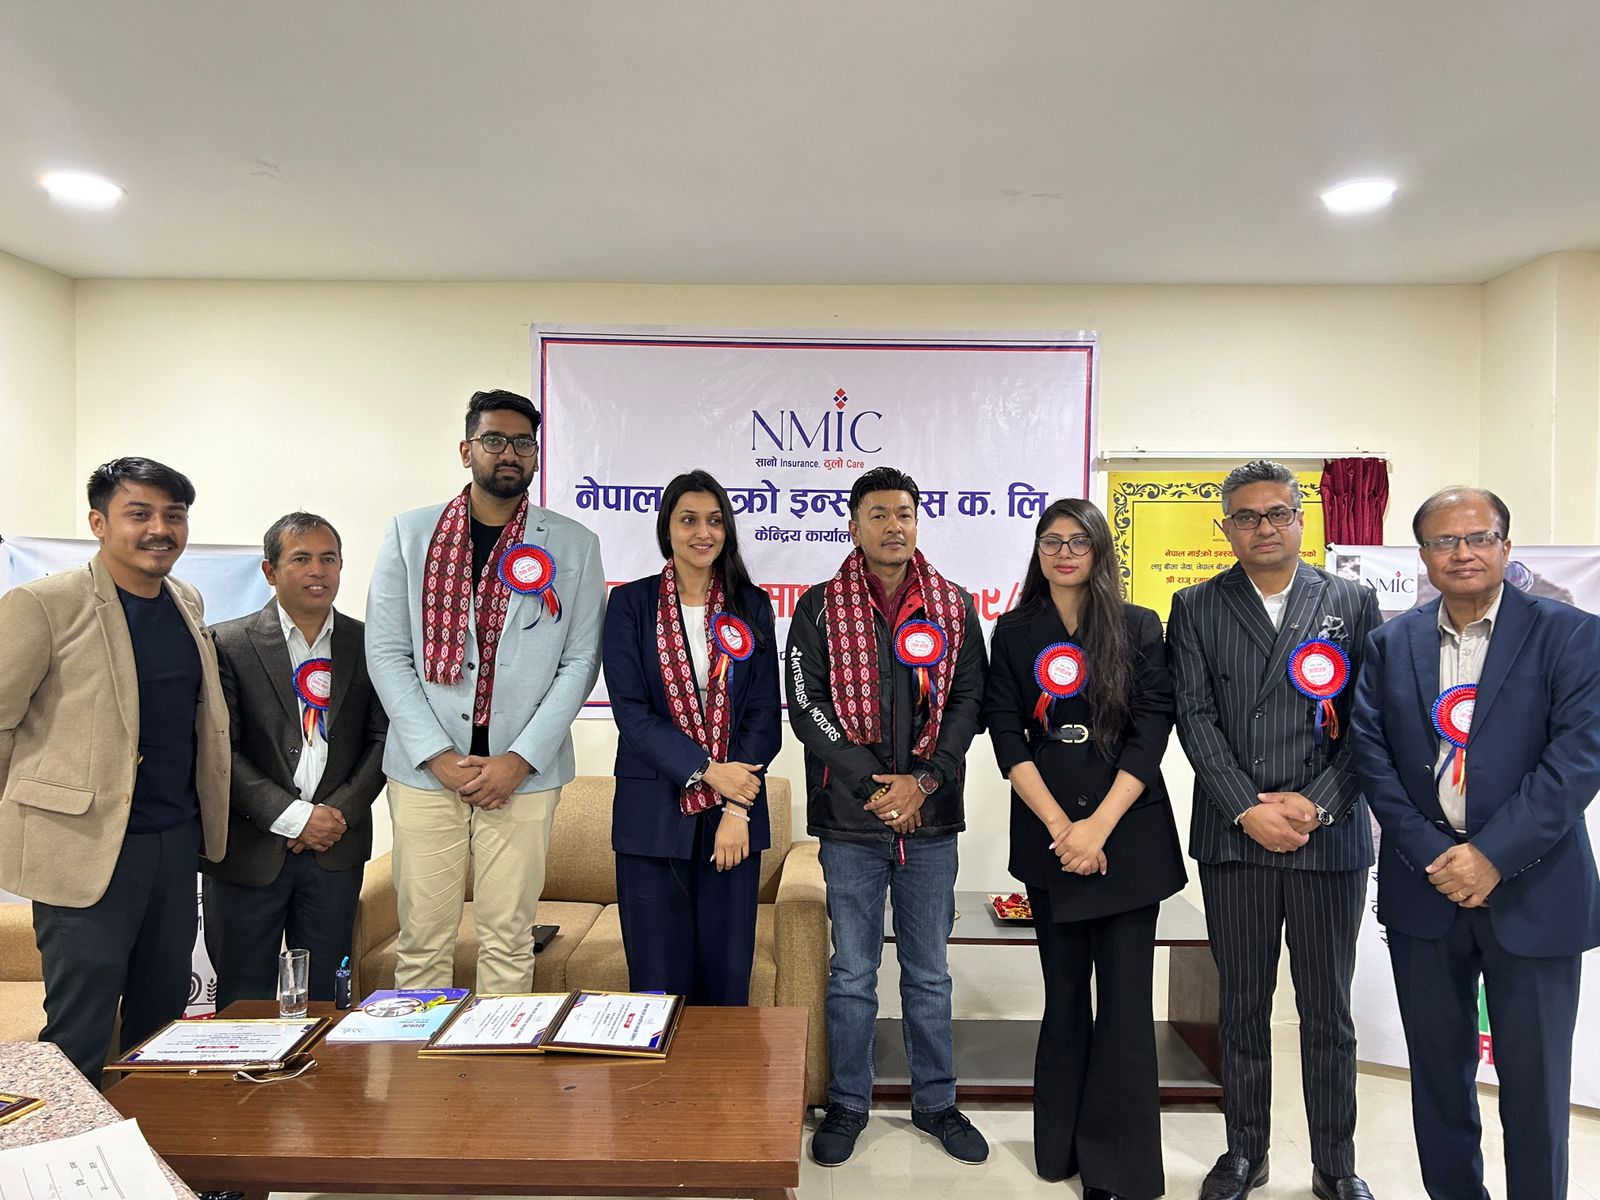 नेपाल माइक्रो इन्स्योरेन्सको प्रथम वार्षिक साधारण सभा सम्पन्न, आइपीओ ल्याउने प्रस्ताव पारित